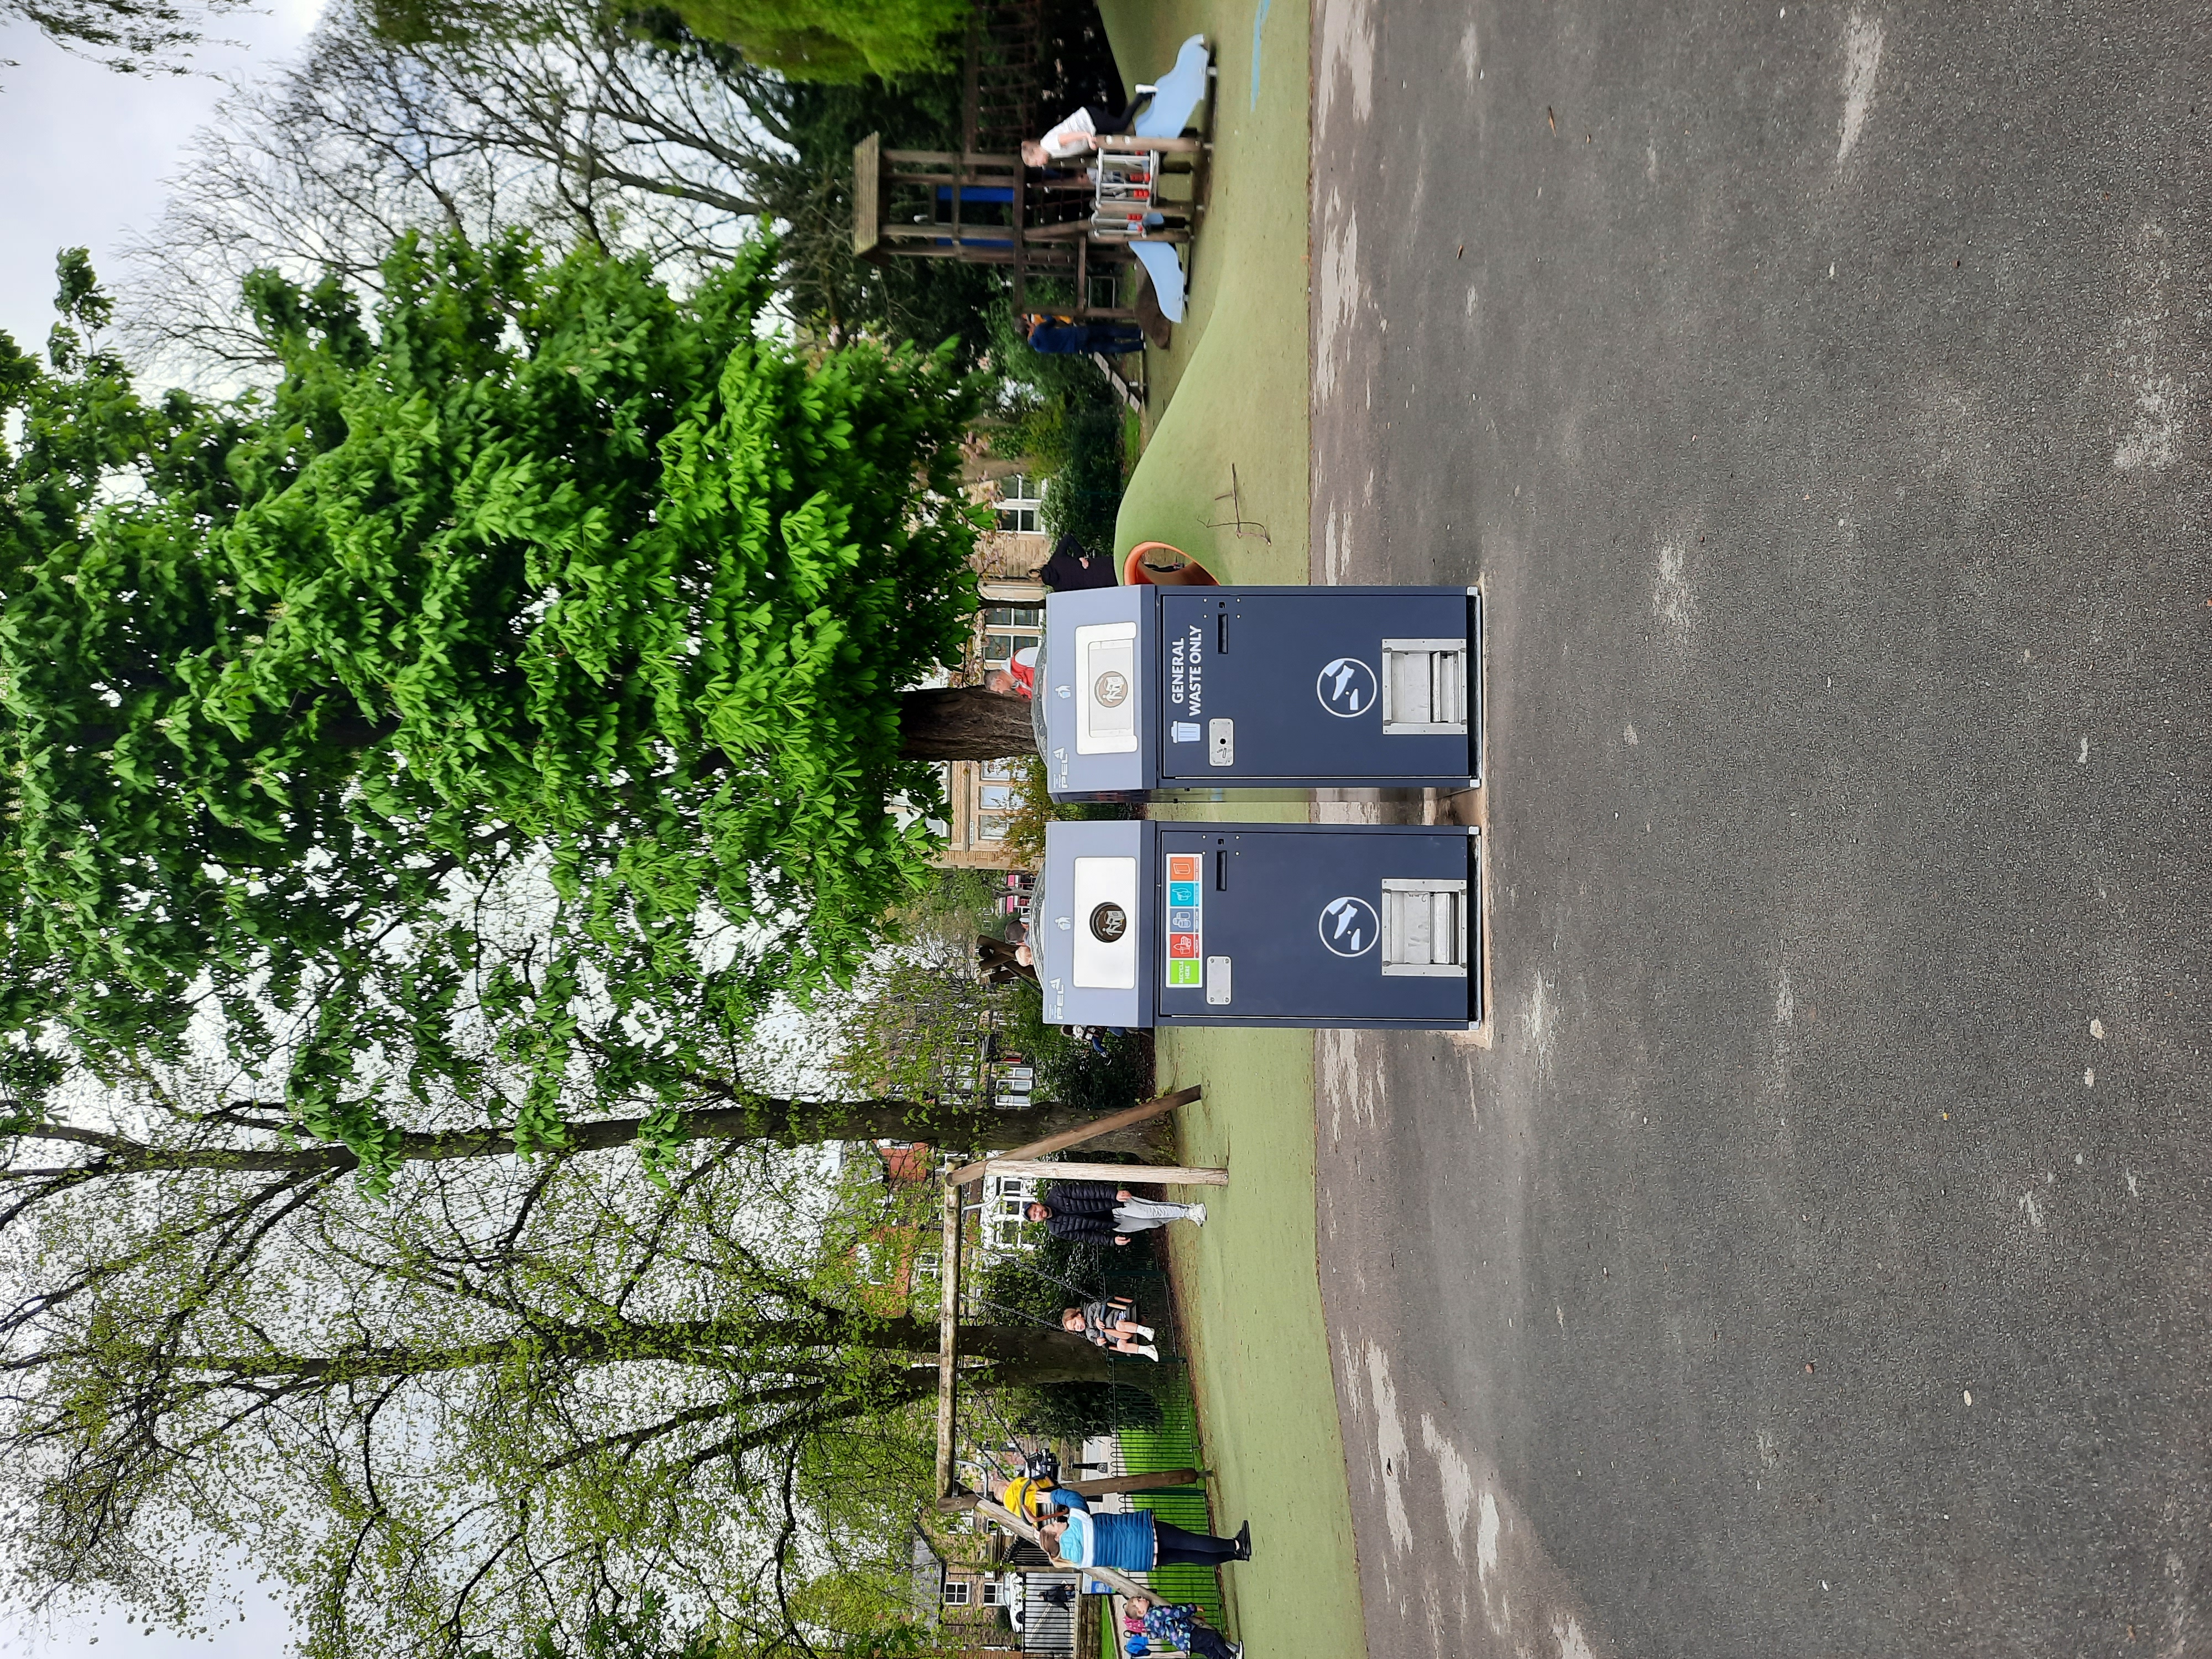 Smart bins at Valley Gardens